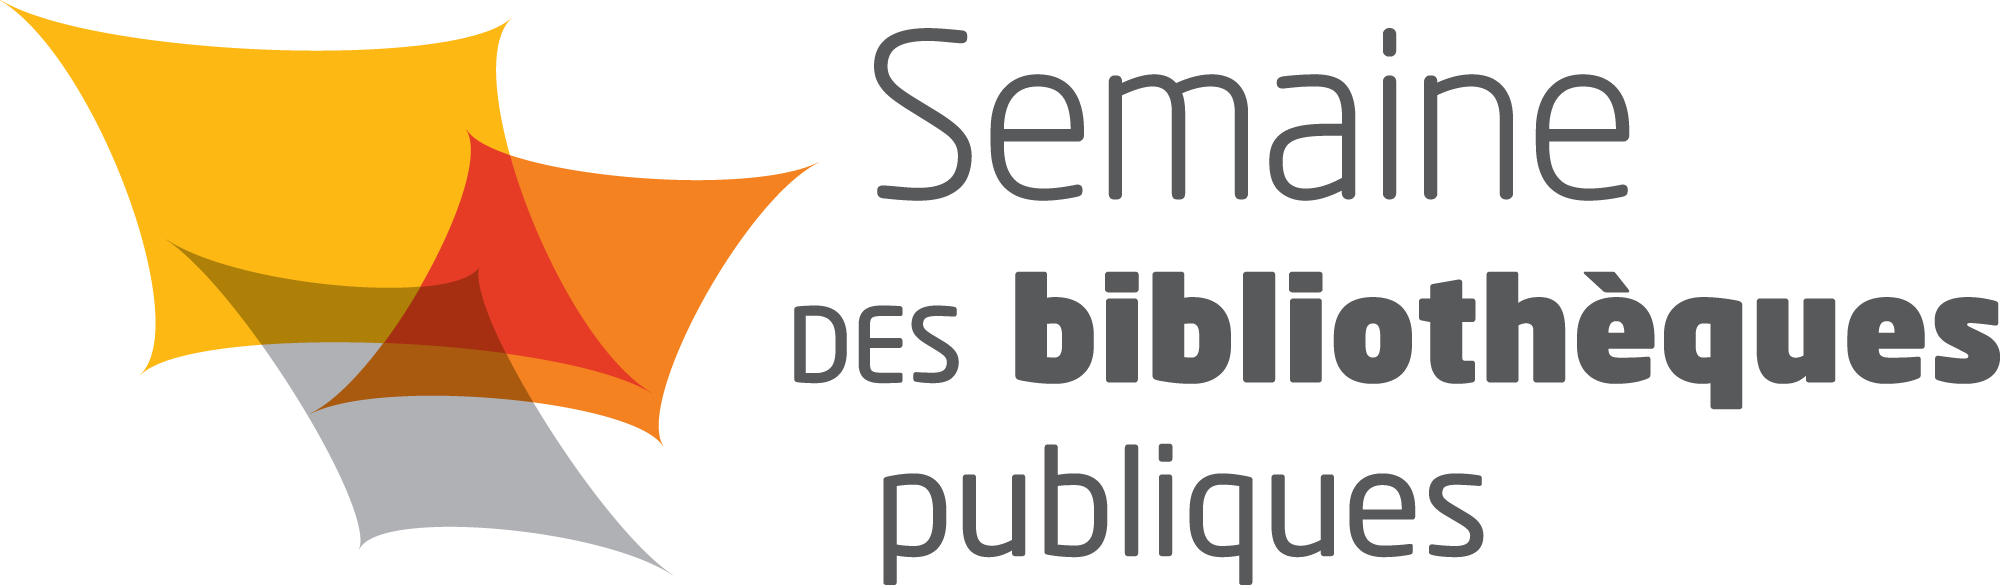 logo semaine biblio